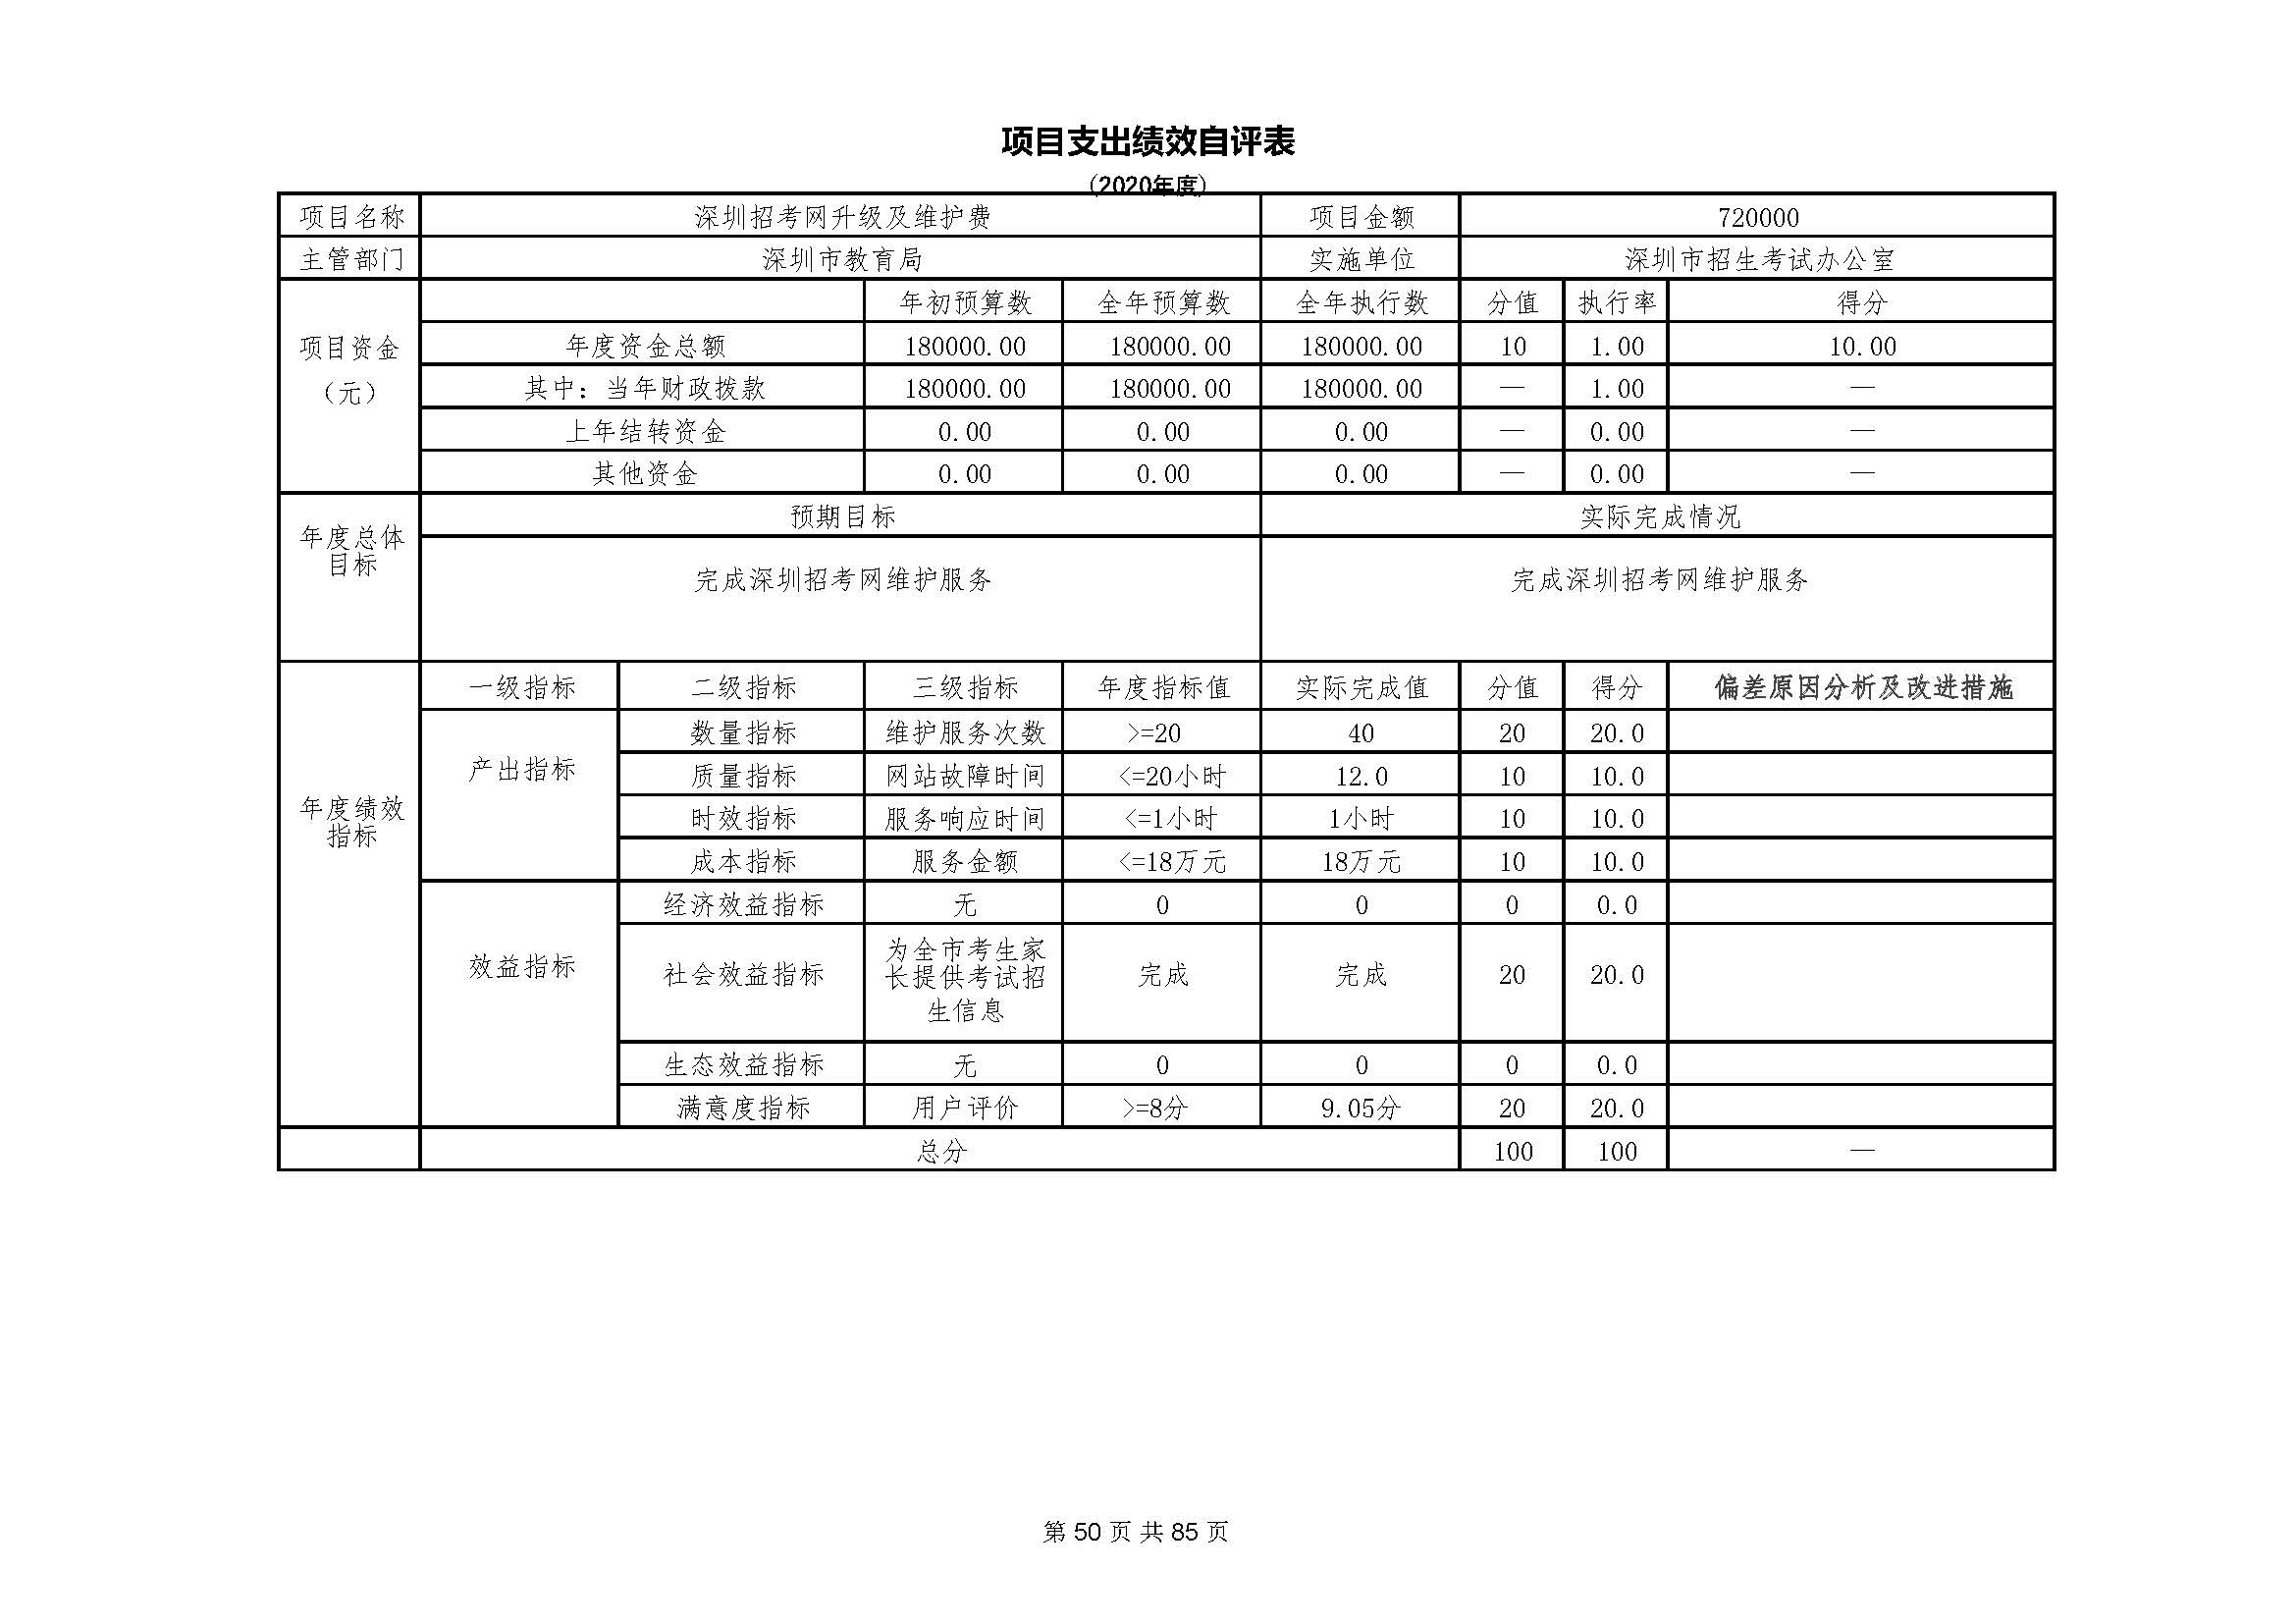 深圳市招生考试办公室2020年度部门决算_页面_51.jpg